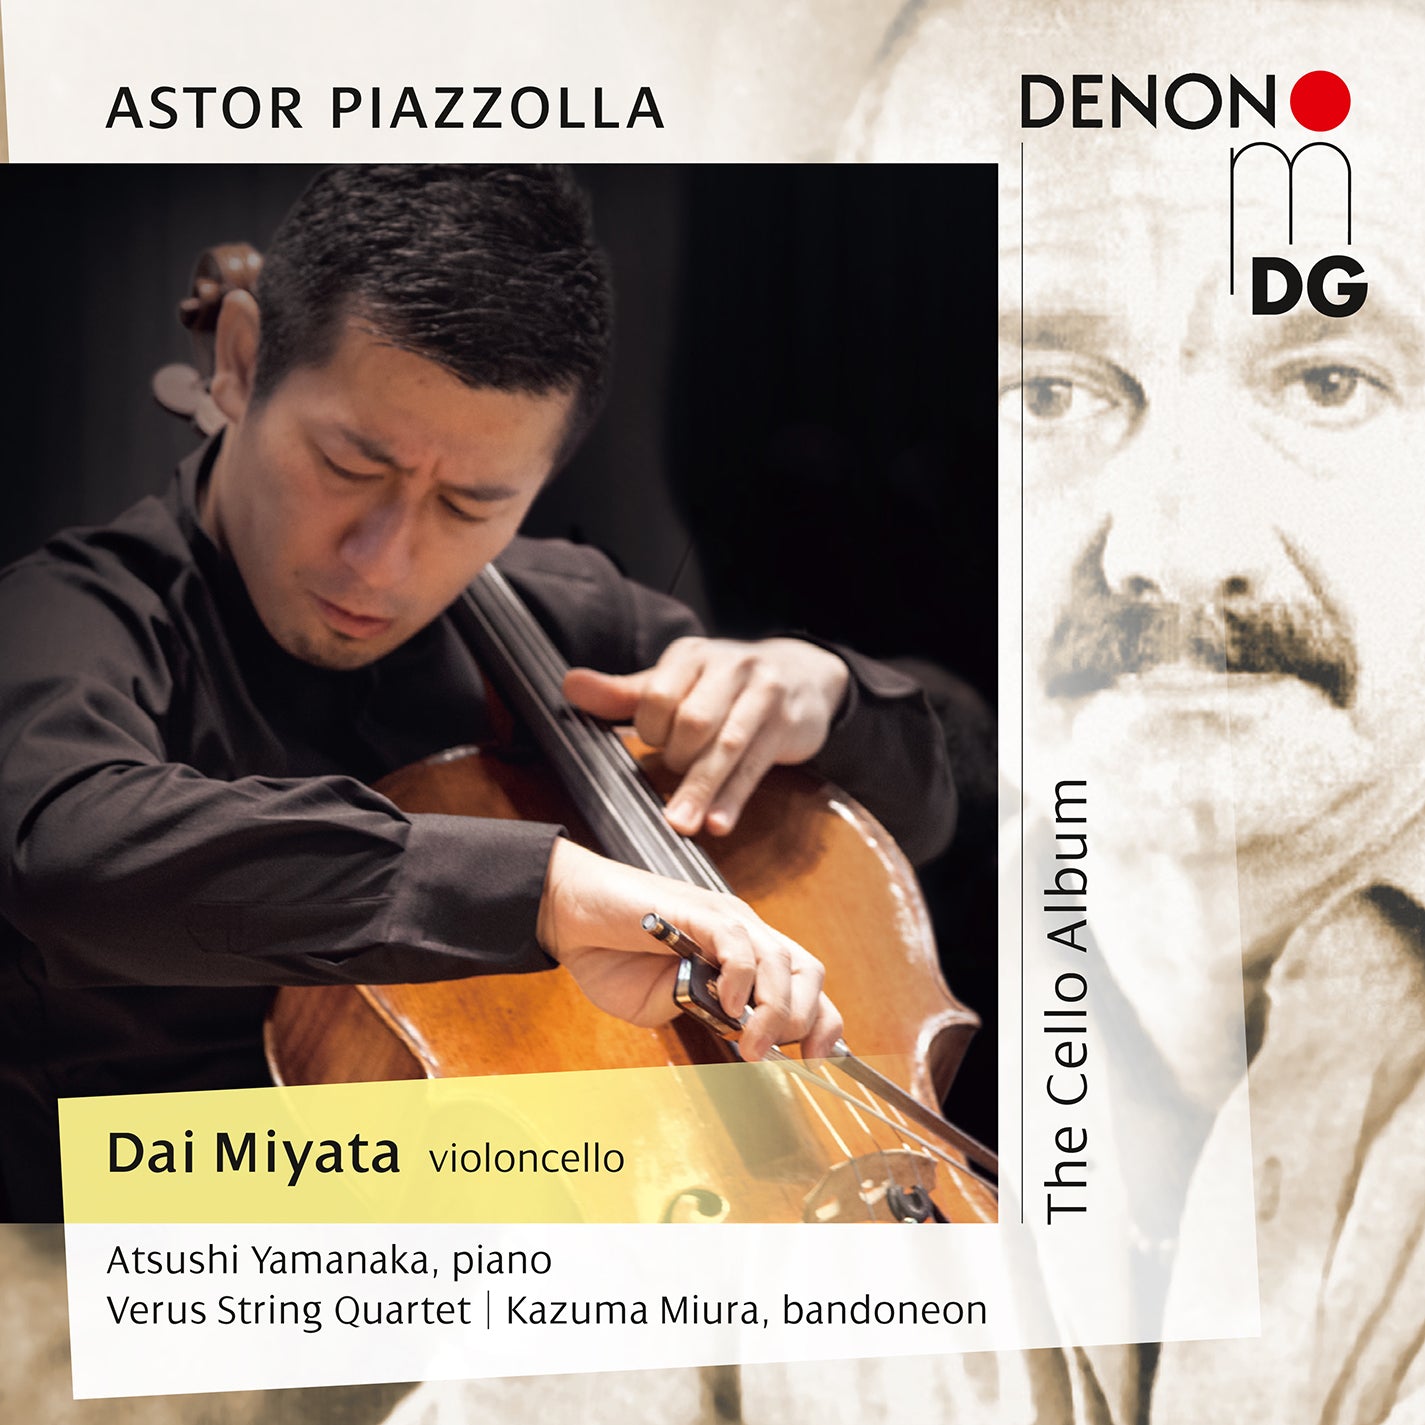 Piazzolla: The Cello Album / Dai Miyata